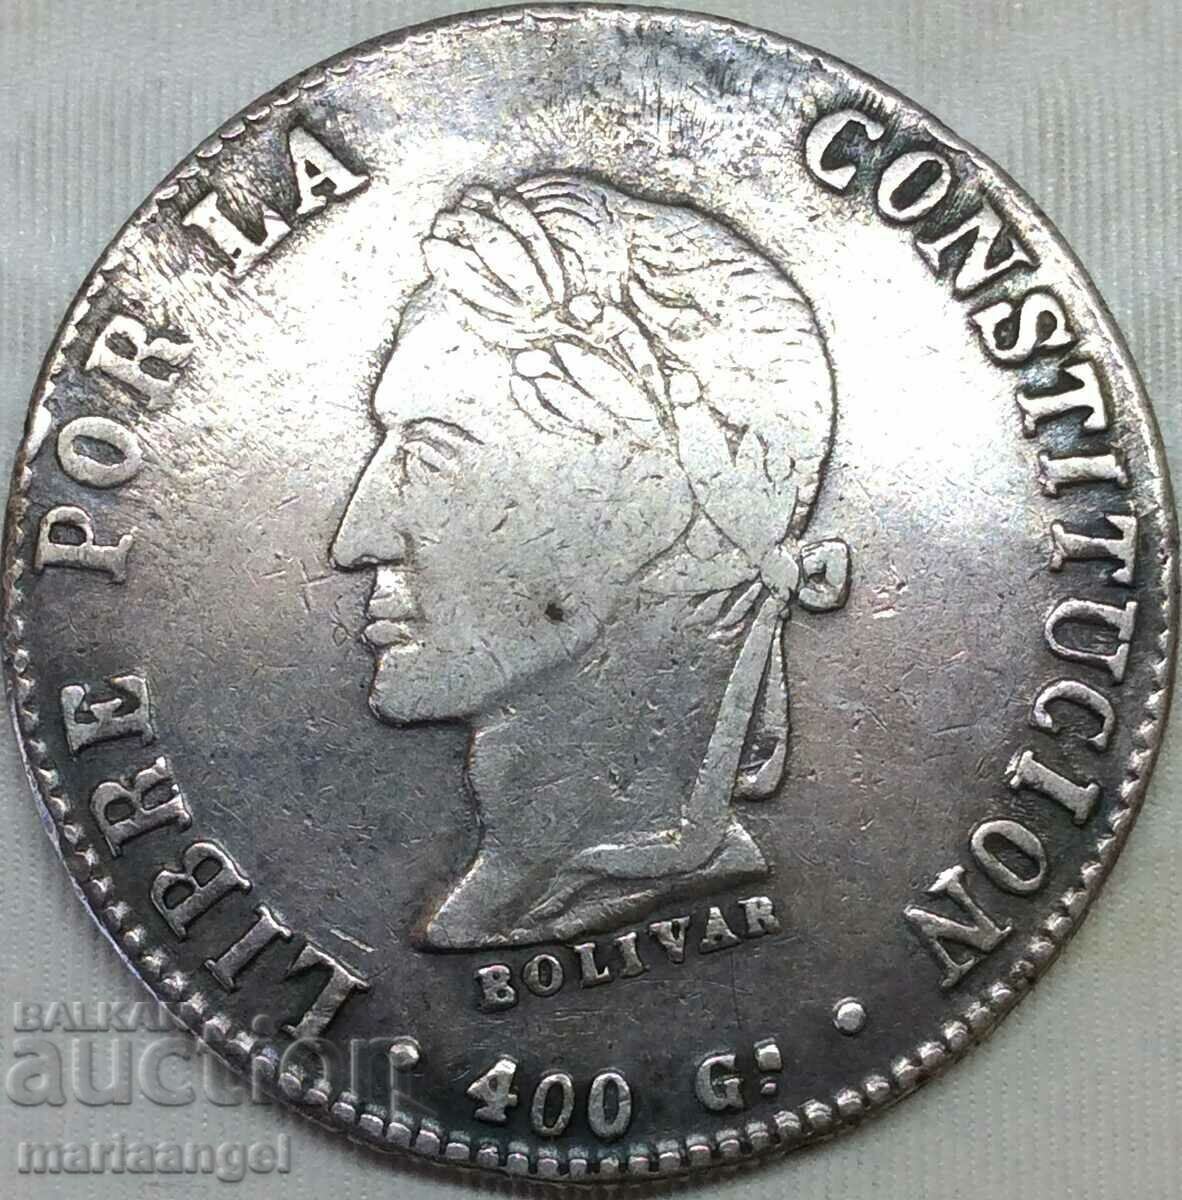 Βολιβία 1863 8 sol Taler Simón Bolívar (1783-1830) ασημένιο